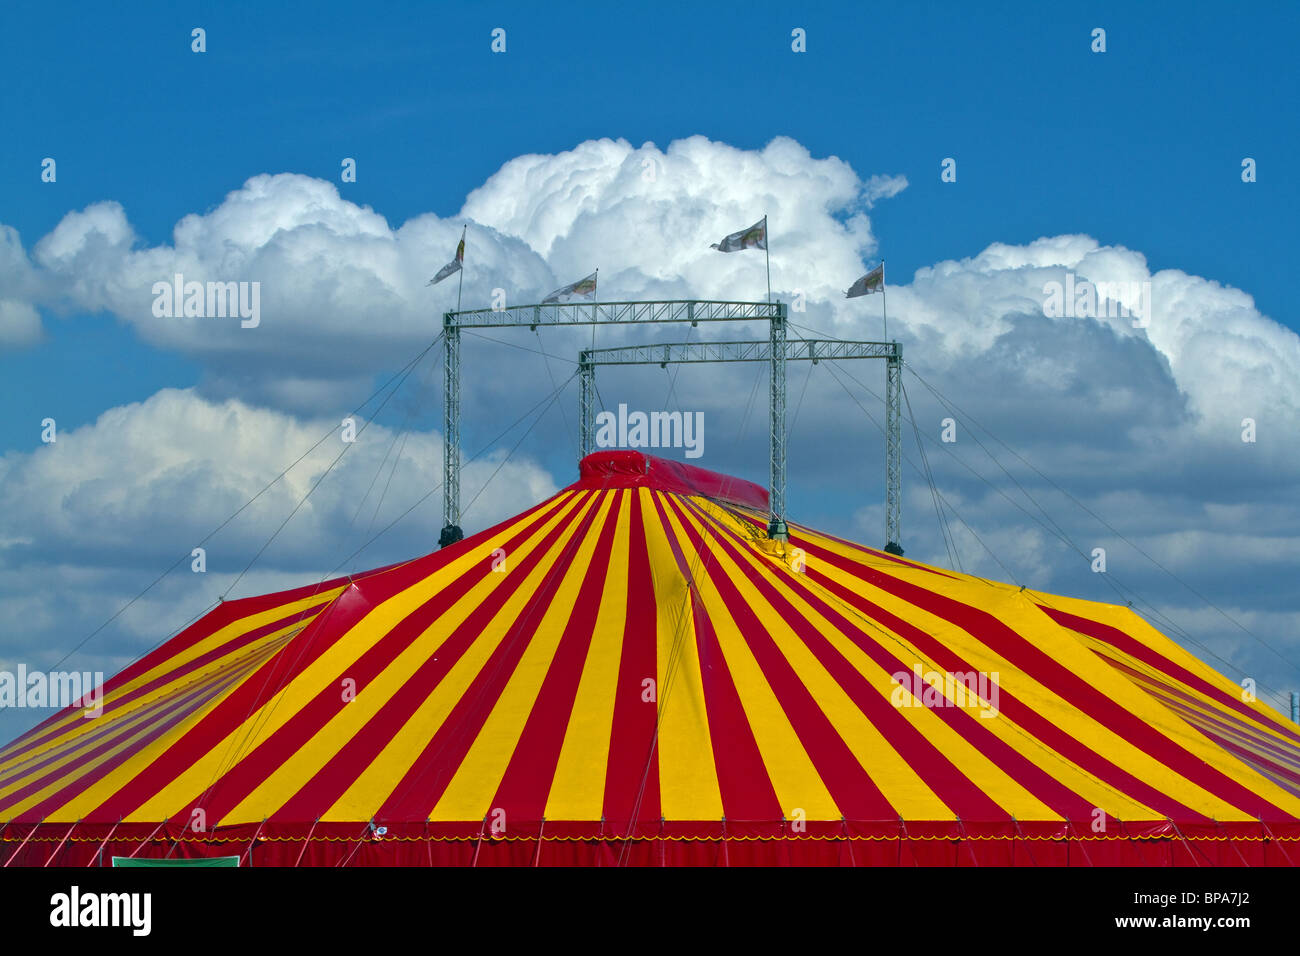 Striped tenda del circo contro un cielo blu con nuvole soffici. Posizione orizzontale Foto Stock